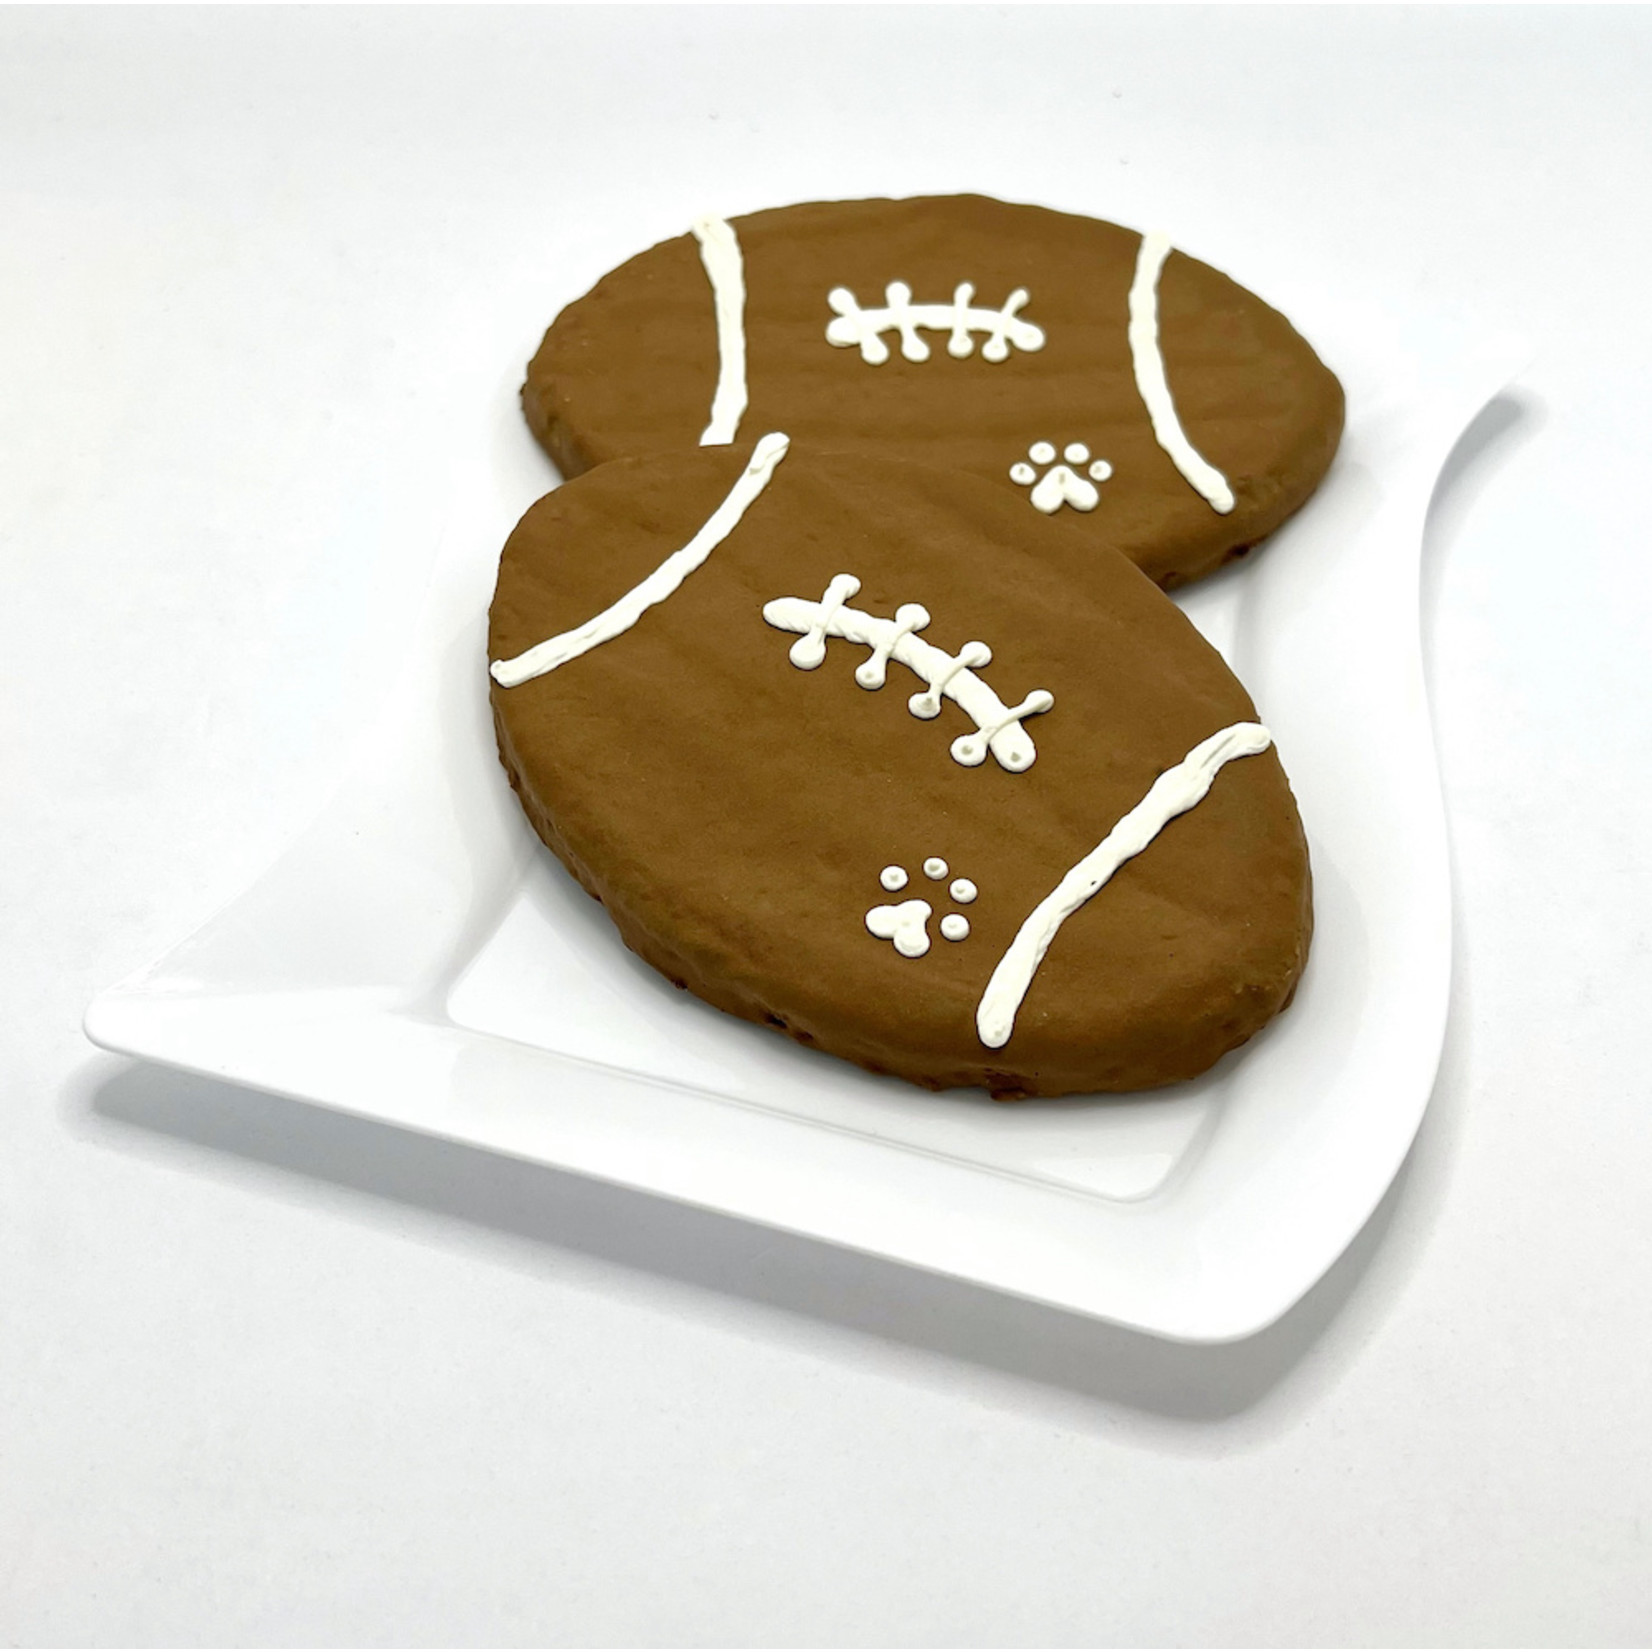 Petlingo Football Mini Cookie